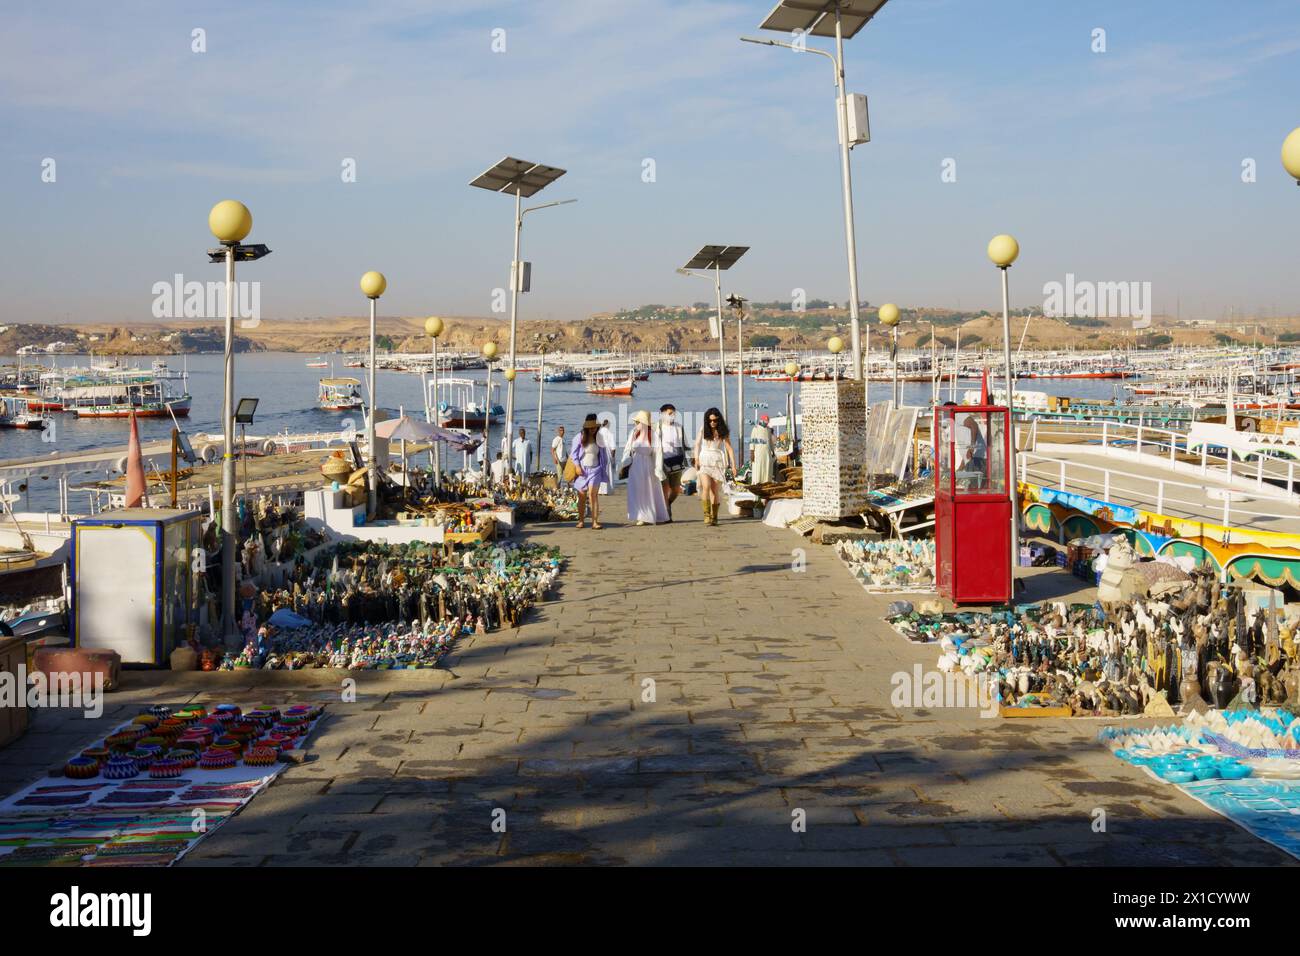 Touristes marchant jusqu'à la cale de la marina Philae Temple des bateaux touristiques, passé des souvenirs sur le sol. Assouan, Égypte Banque D'Images